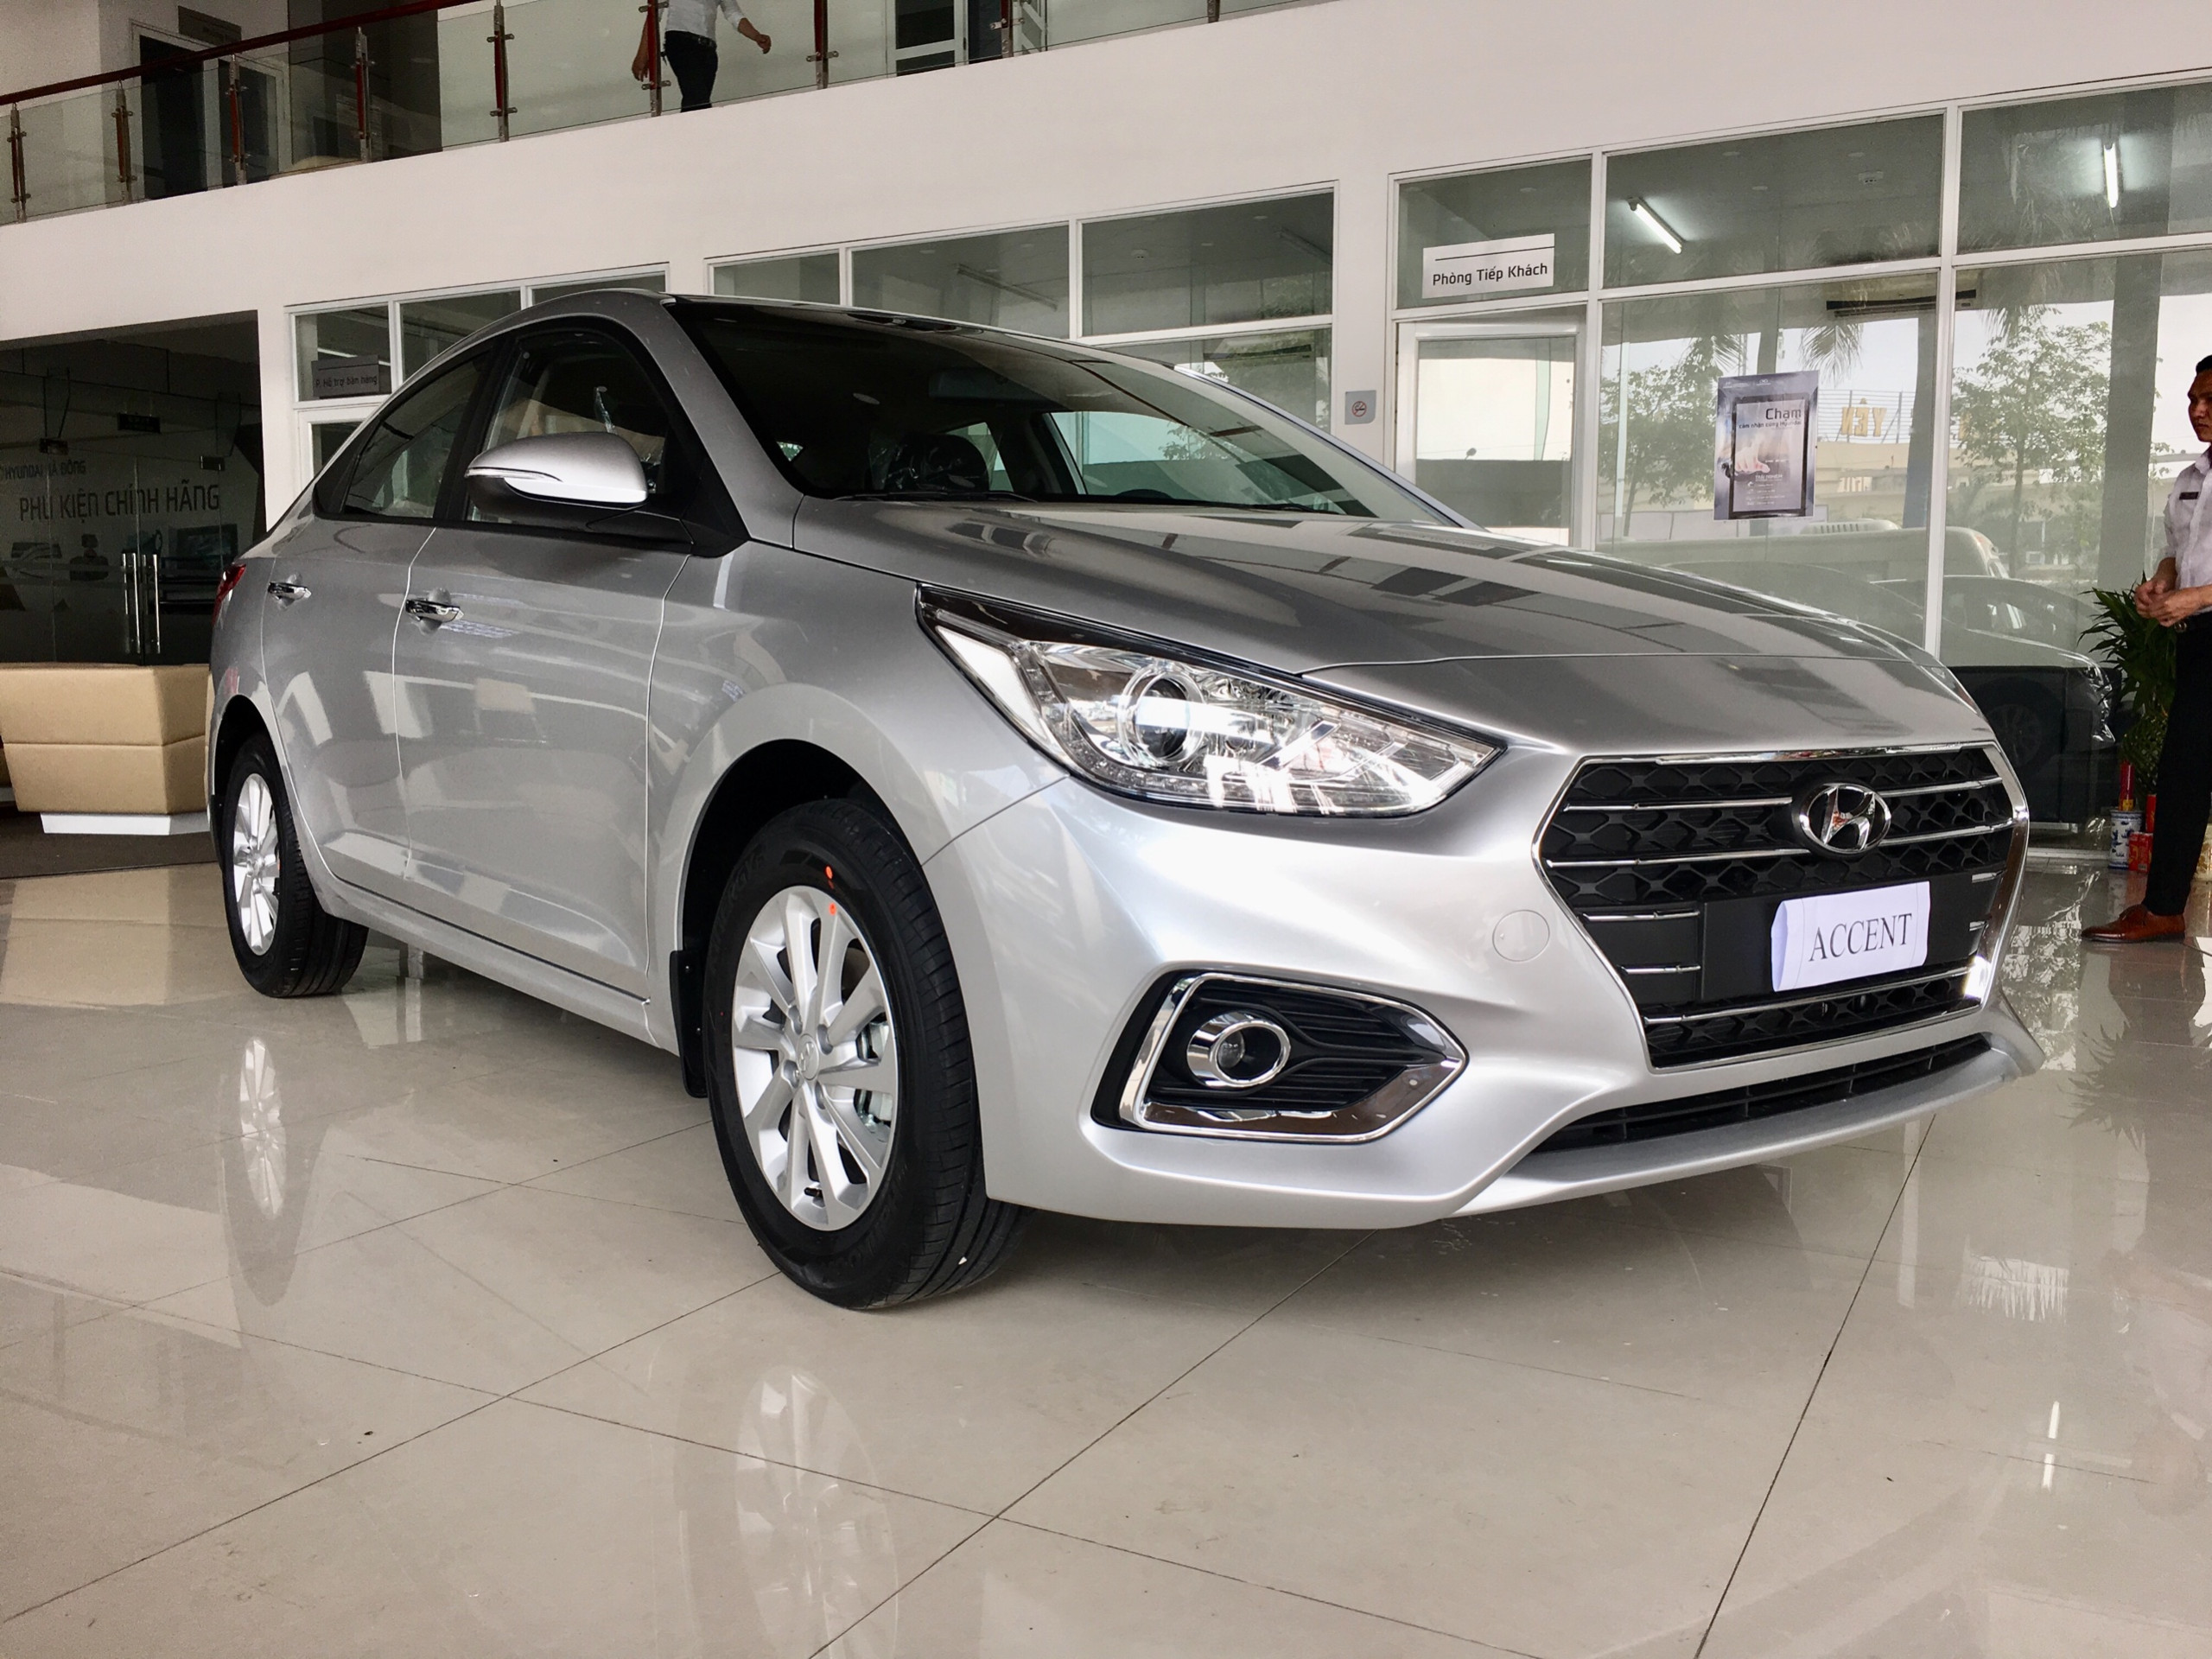 Giá lăn bánh Hyundai Accent giảm sau khi trừ 50% phí trước bạ